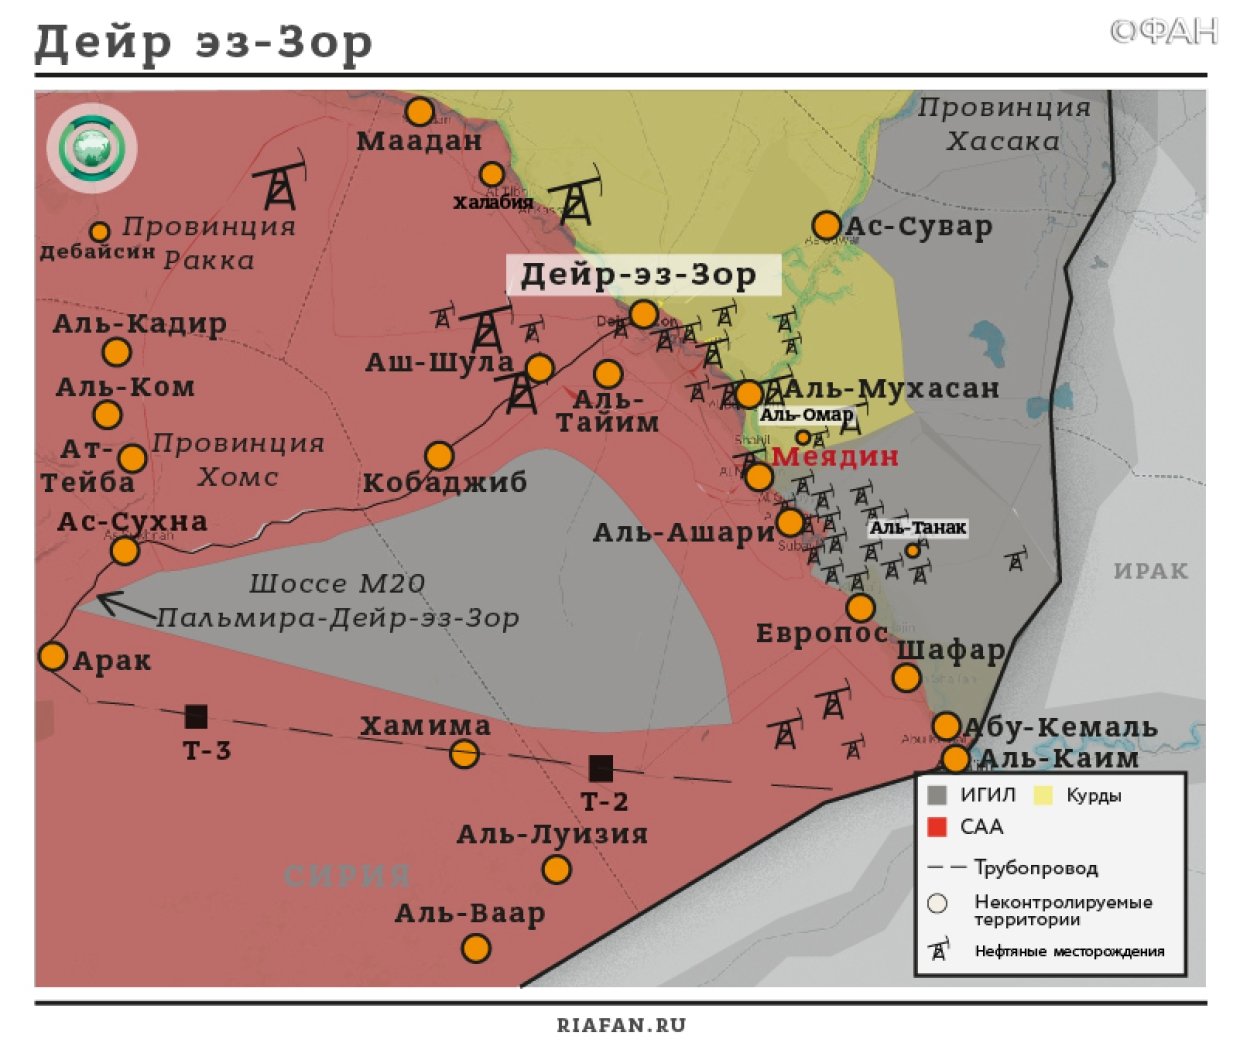 Сирия новости 22 апреля 12.30: ВКС РФ бьют по «Ан-Нусре» в Идлибе и Хаме, САА отбила атаку ИГ в Дейр-эз-Зоре